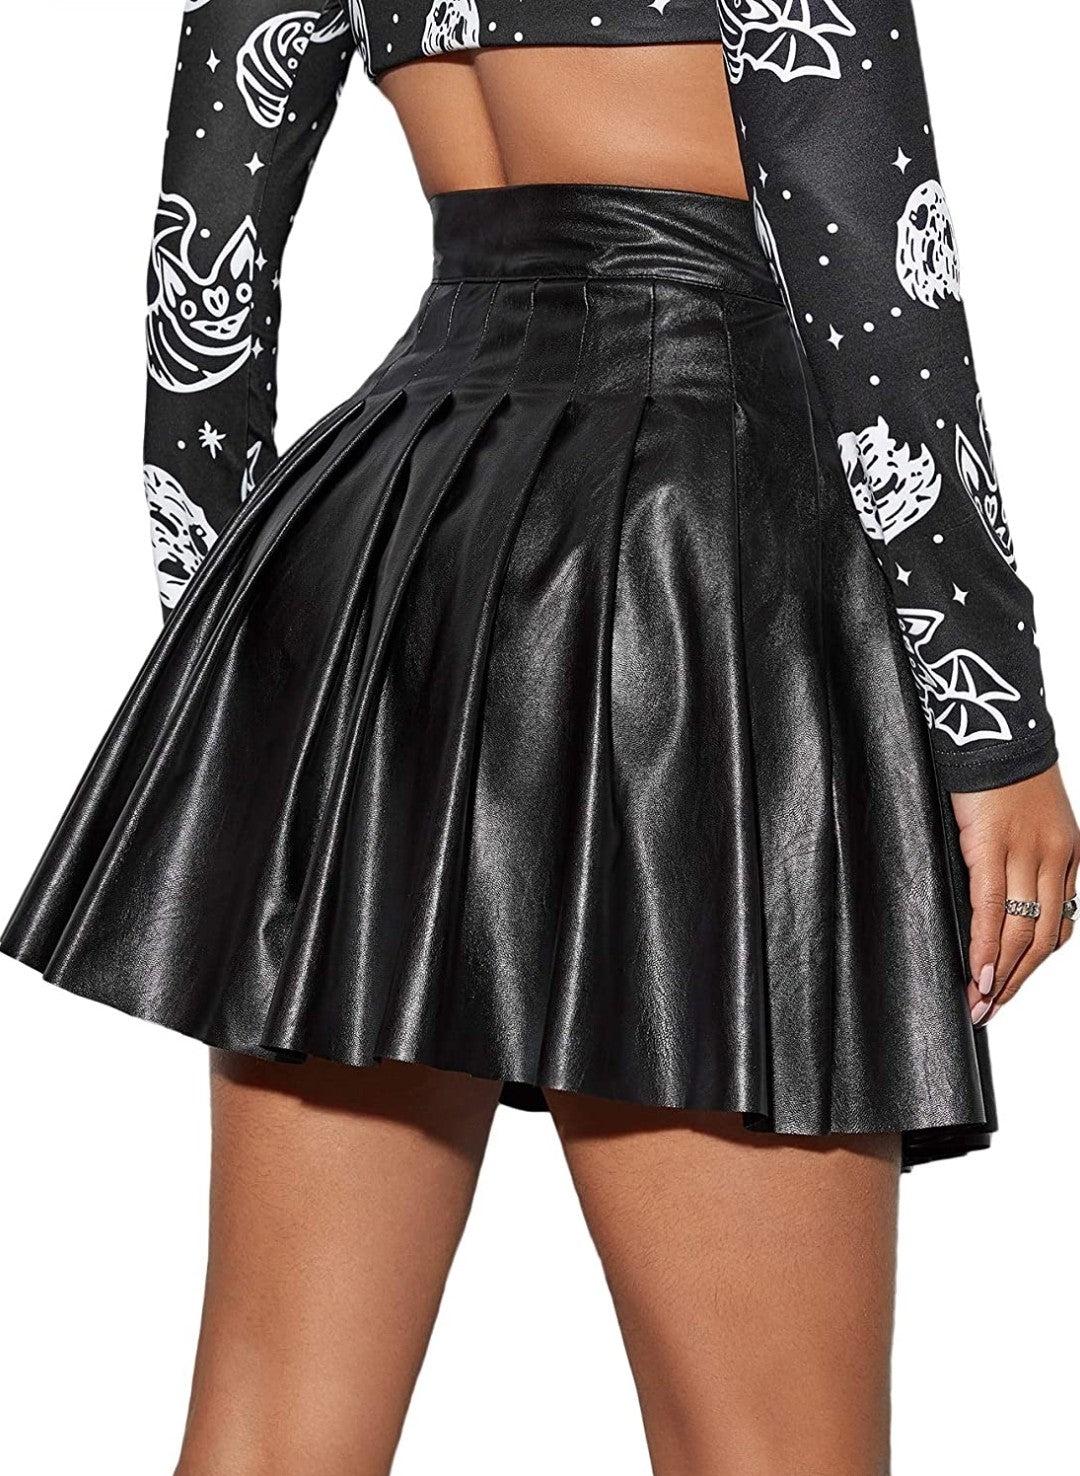 High Waist Leather Mini Skirt